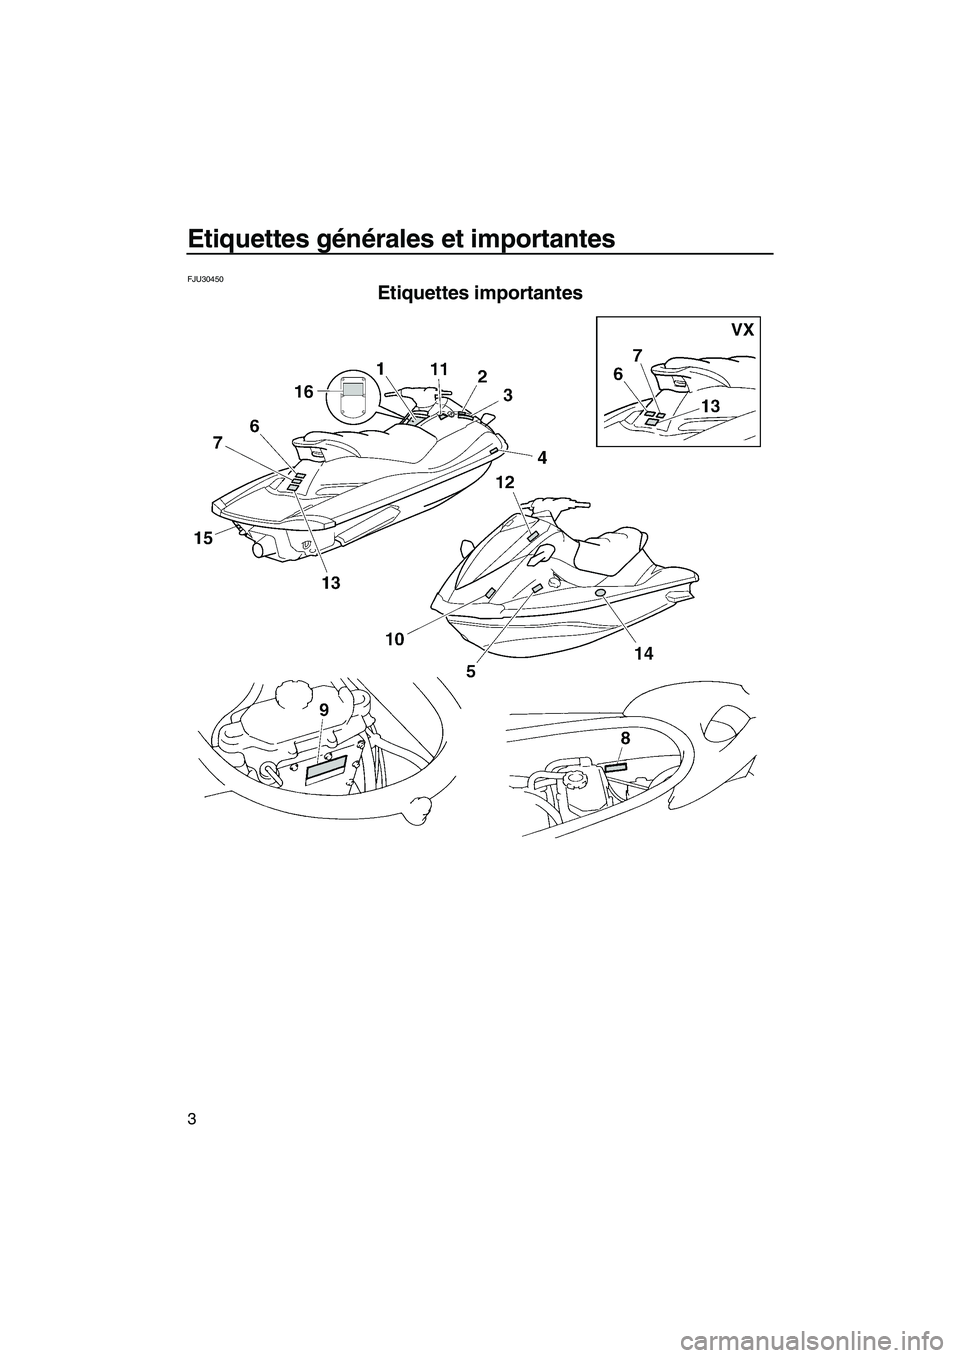 YAMAHA VX SPORT 2008  Notices Demploi (in French) Etiquettes générales et importantes
3
FJU30450
Etiquettes importantes 
UF1K73F0.book  Page 3  Wednesday, July 11, 2007  4:05 PM 